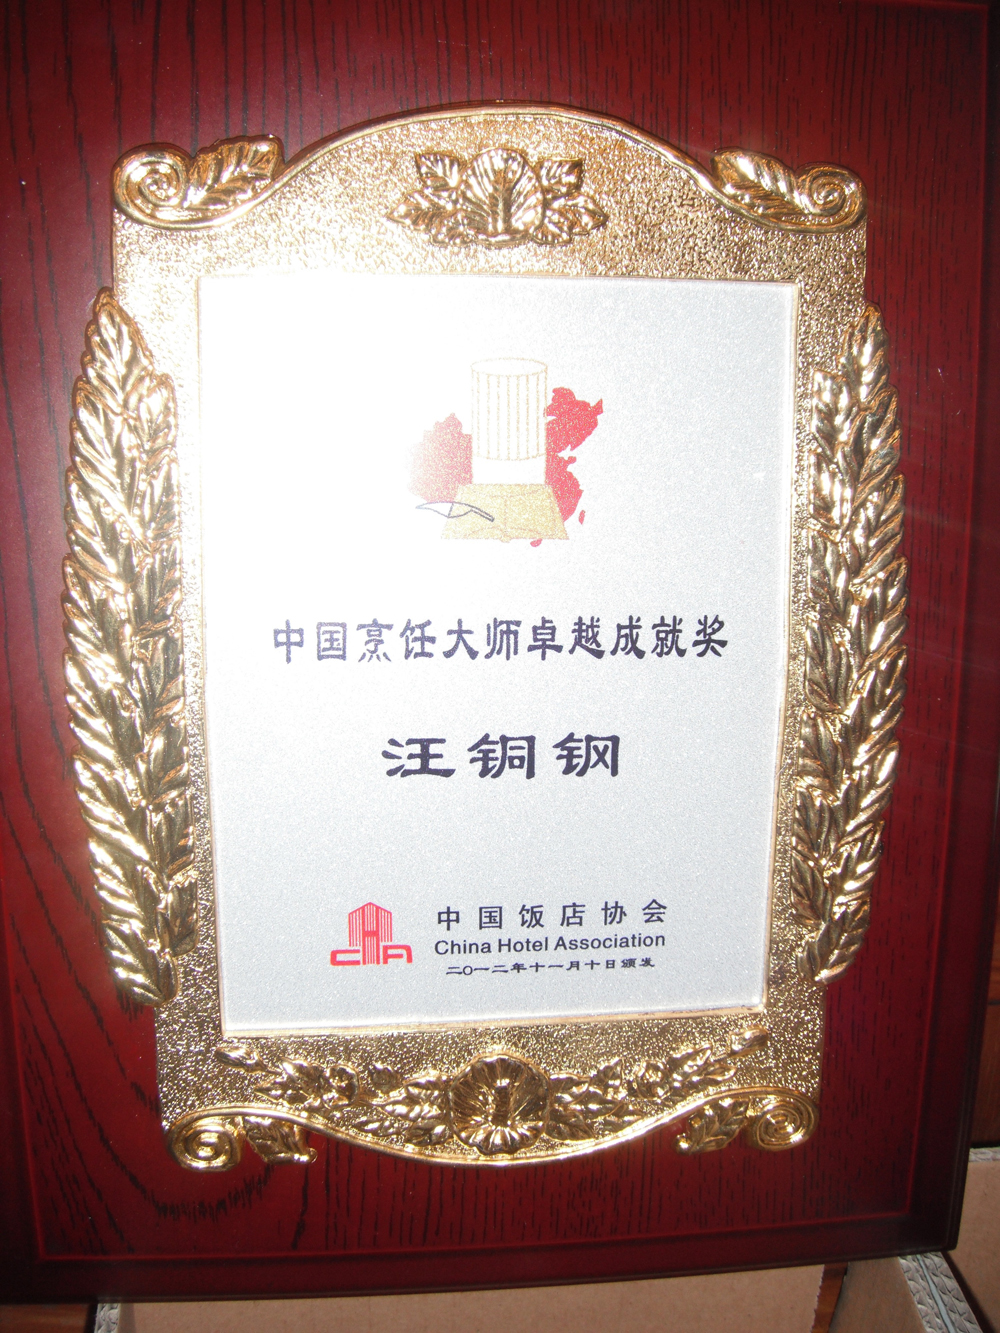 汪銅鋼大師獲得的中國烹飪大師卓越成就獎牌